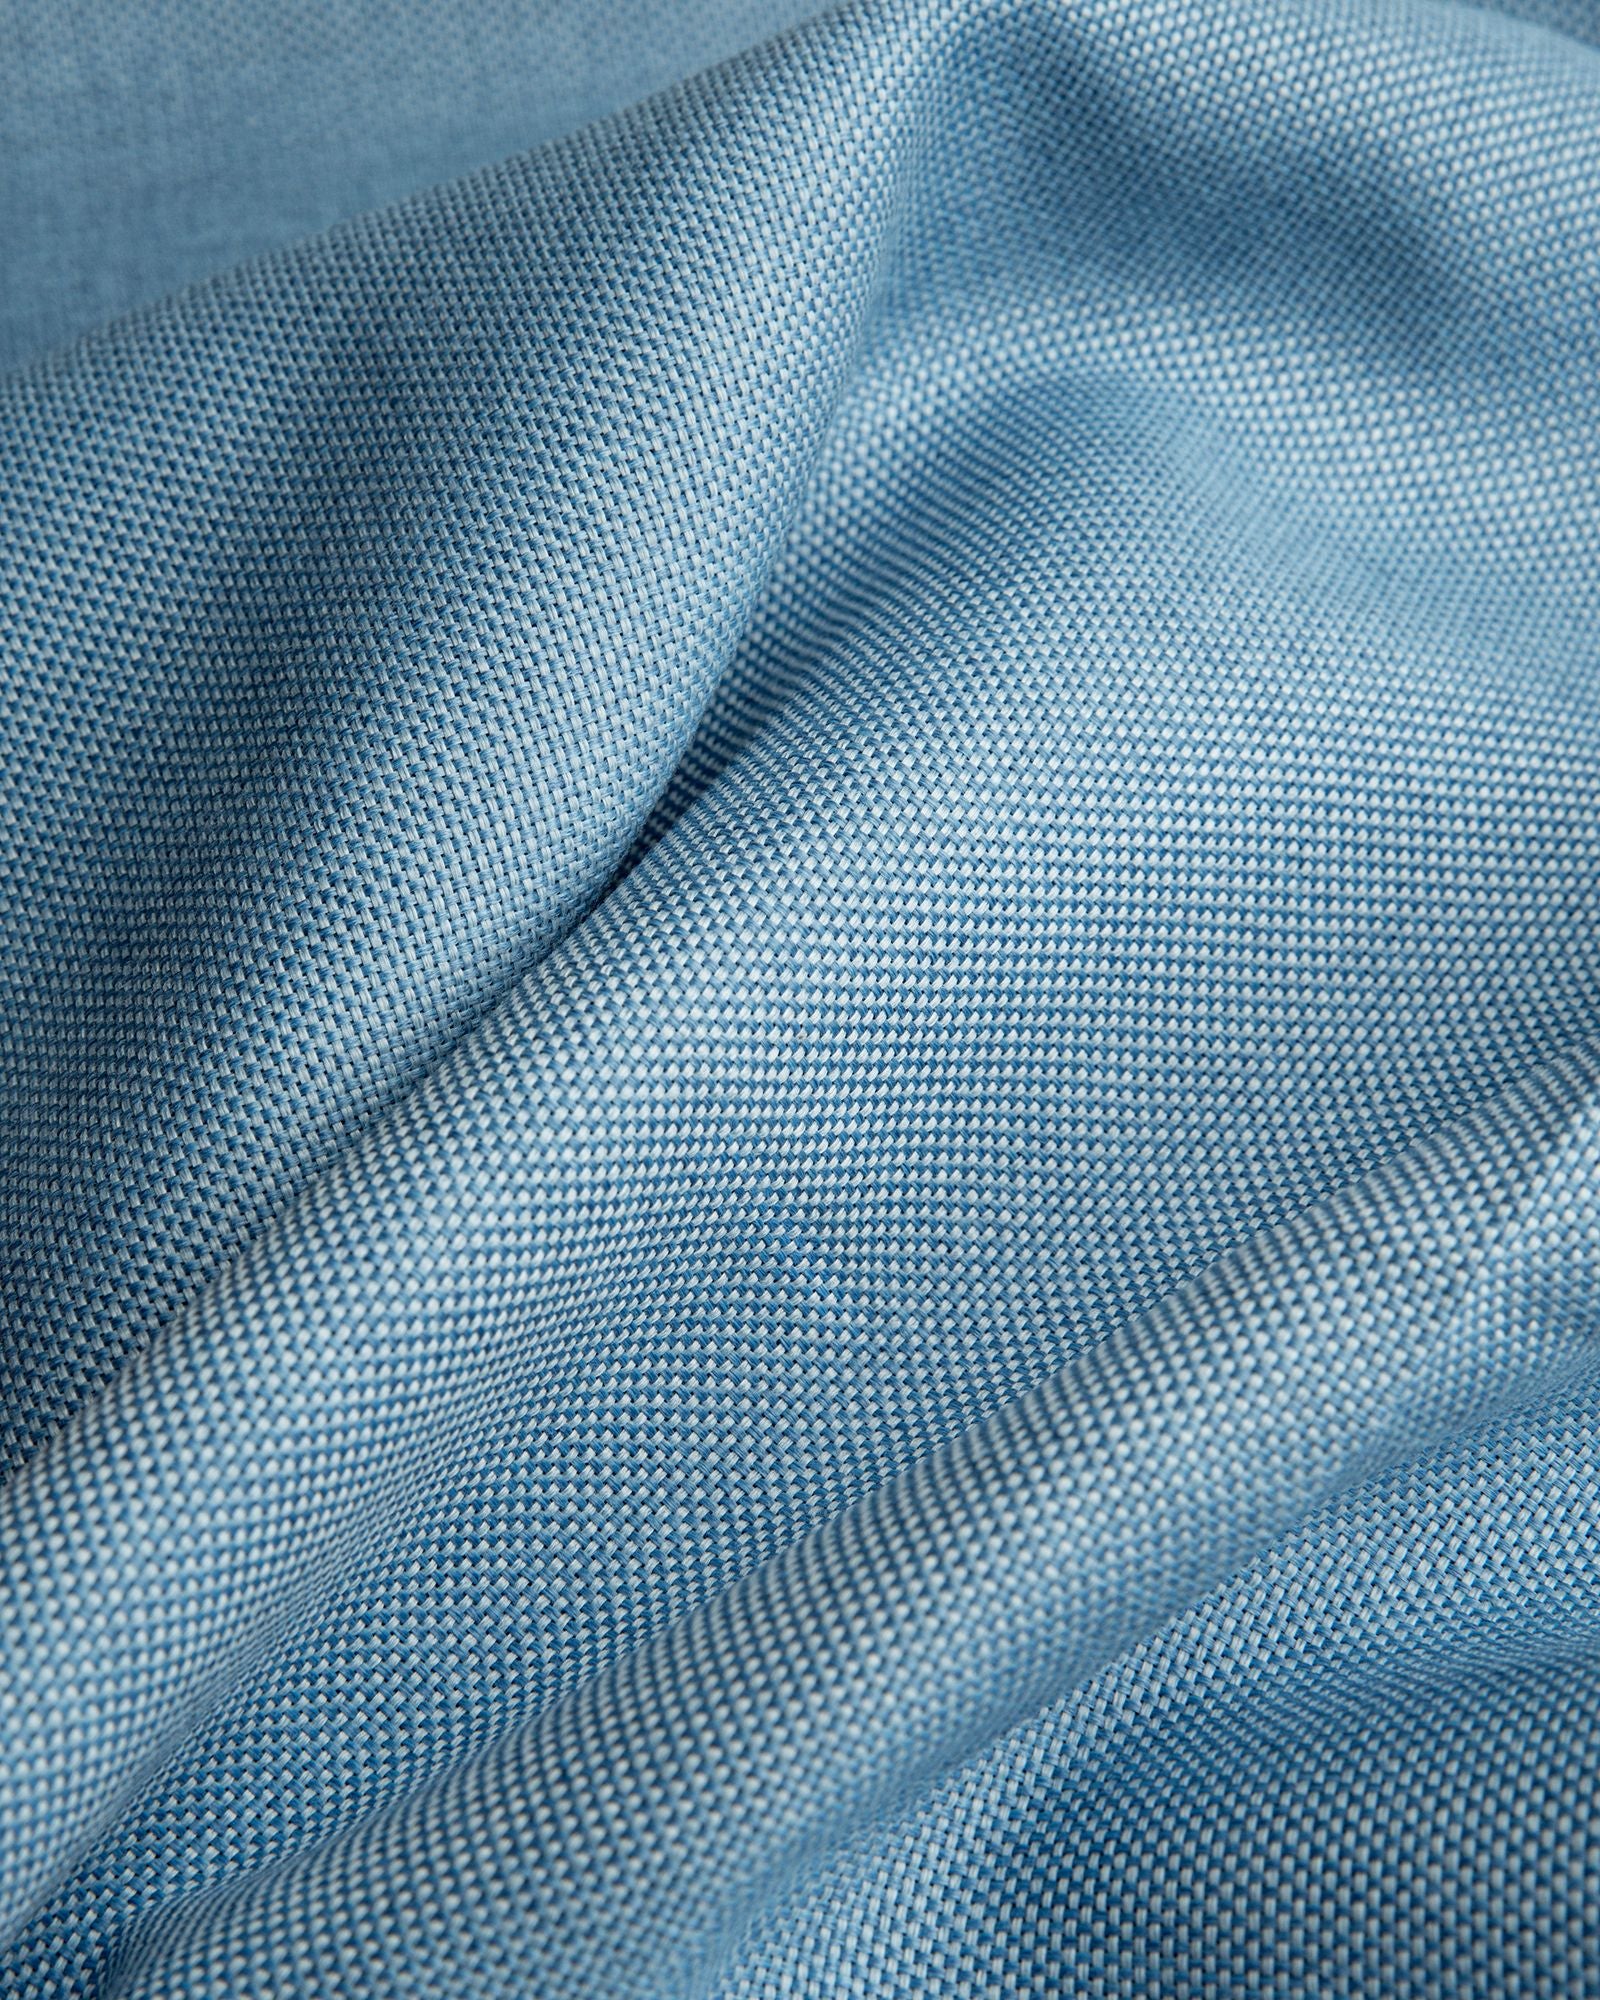 Größe: 130x 170 cm Farbe: hellblau #farbe_hellblau